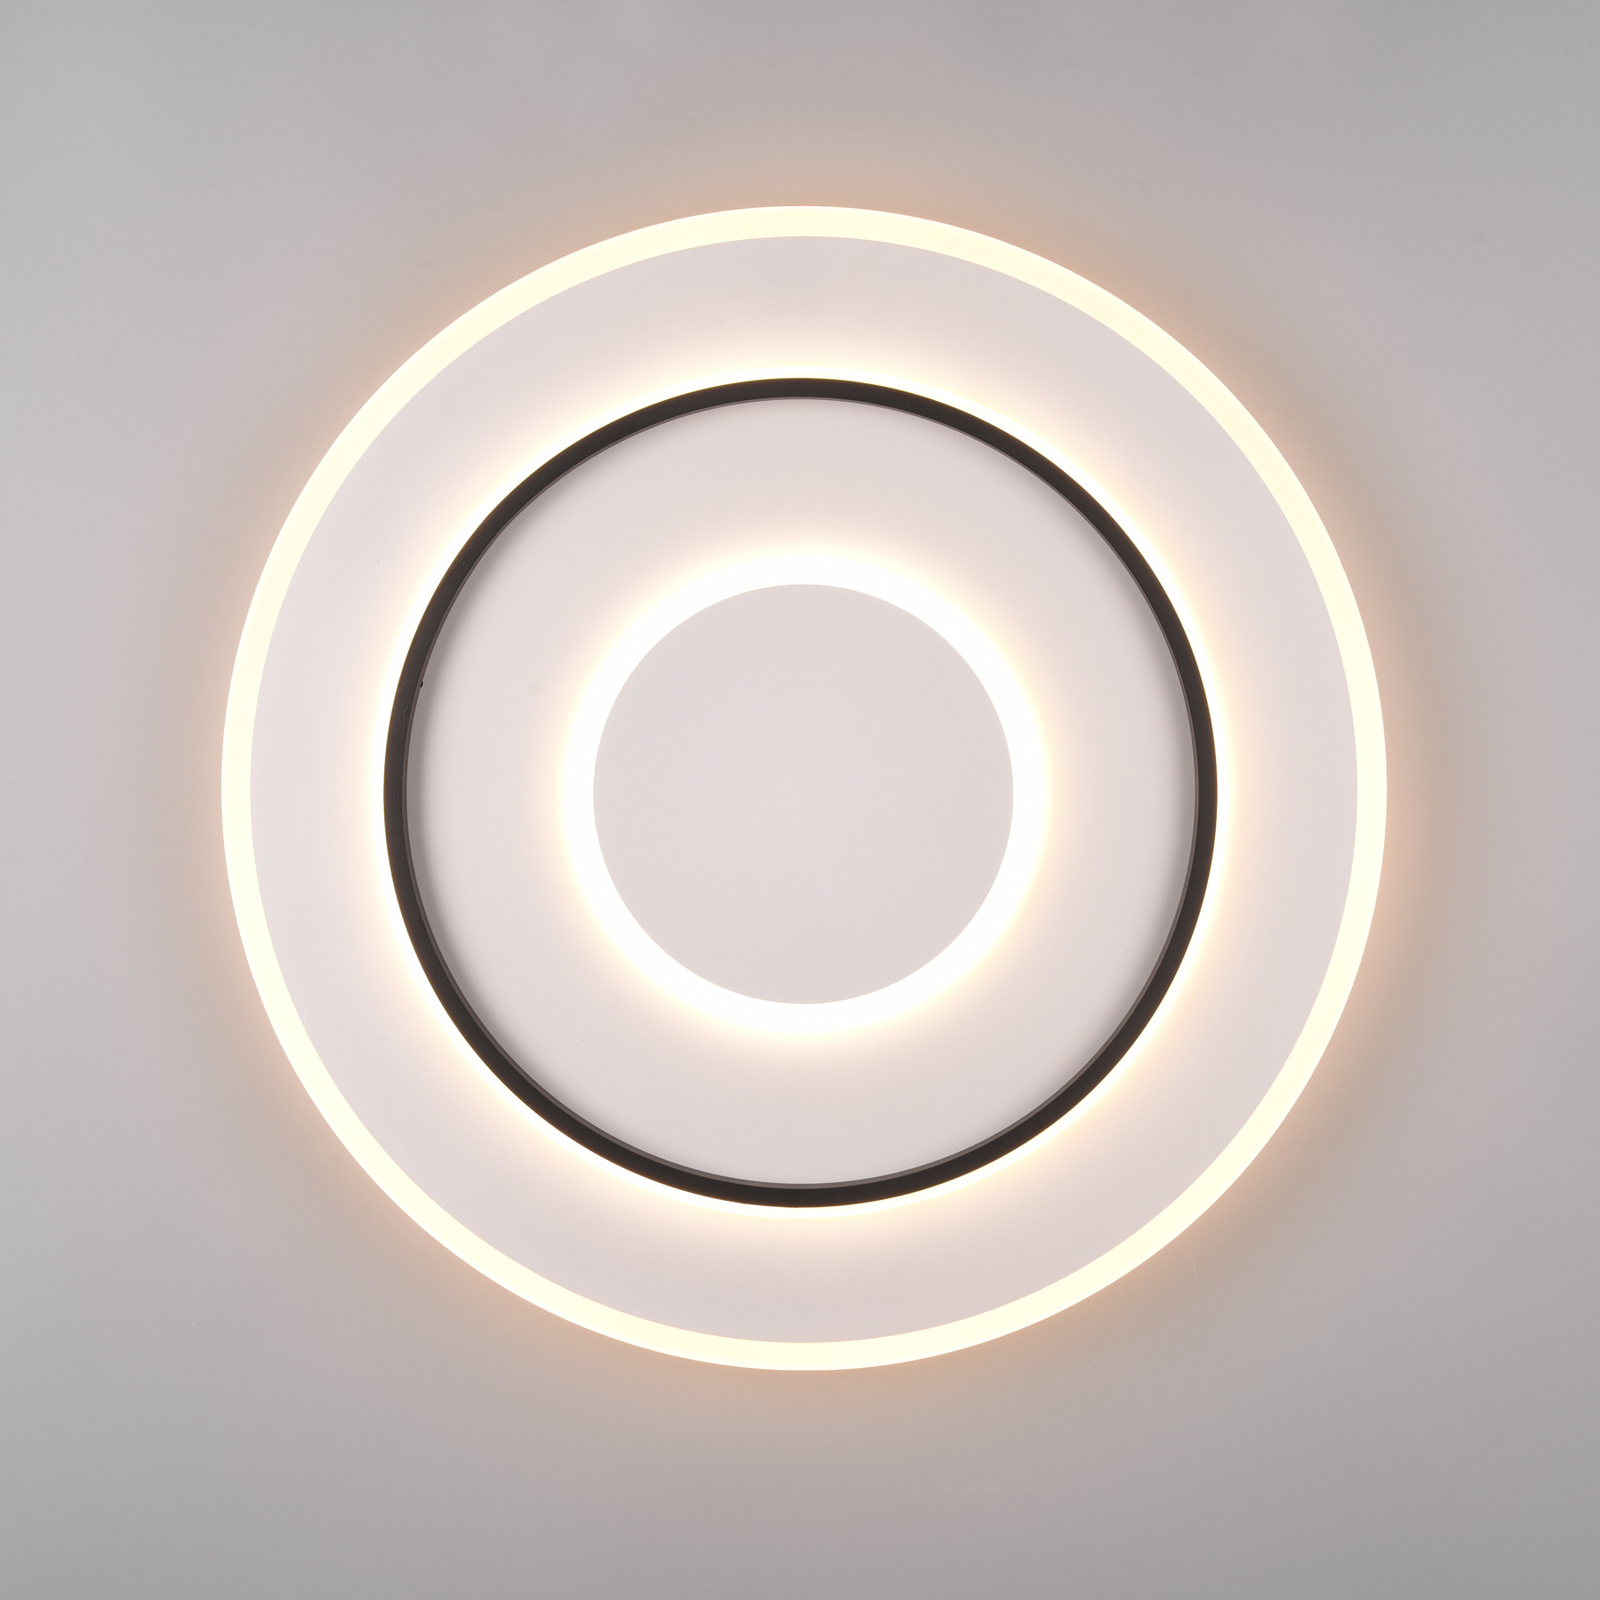 LED-Deckenlampe Jora rund Fernbedienung, Ø 60 cm